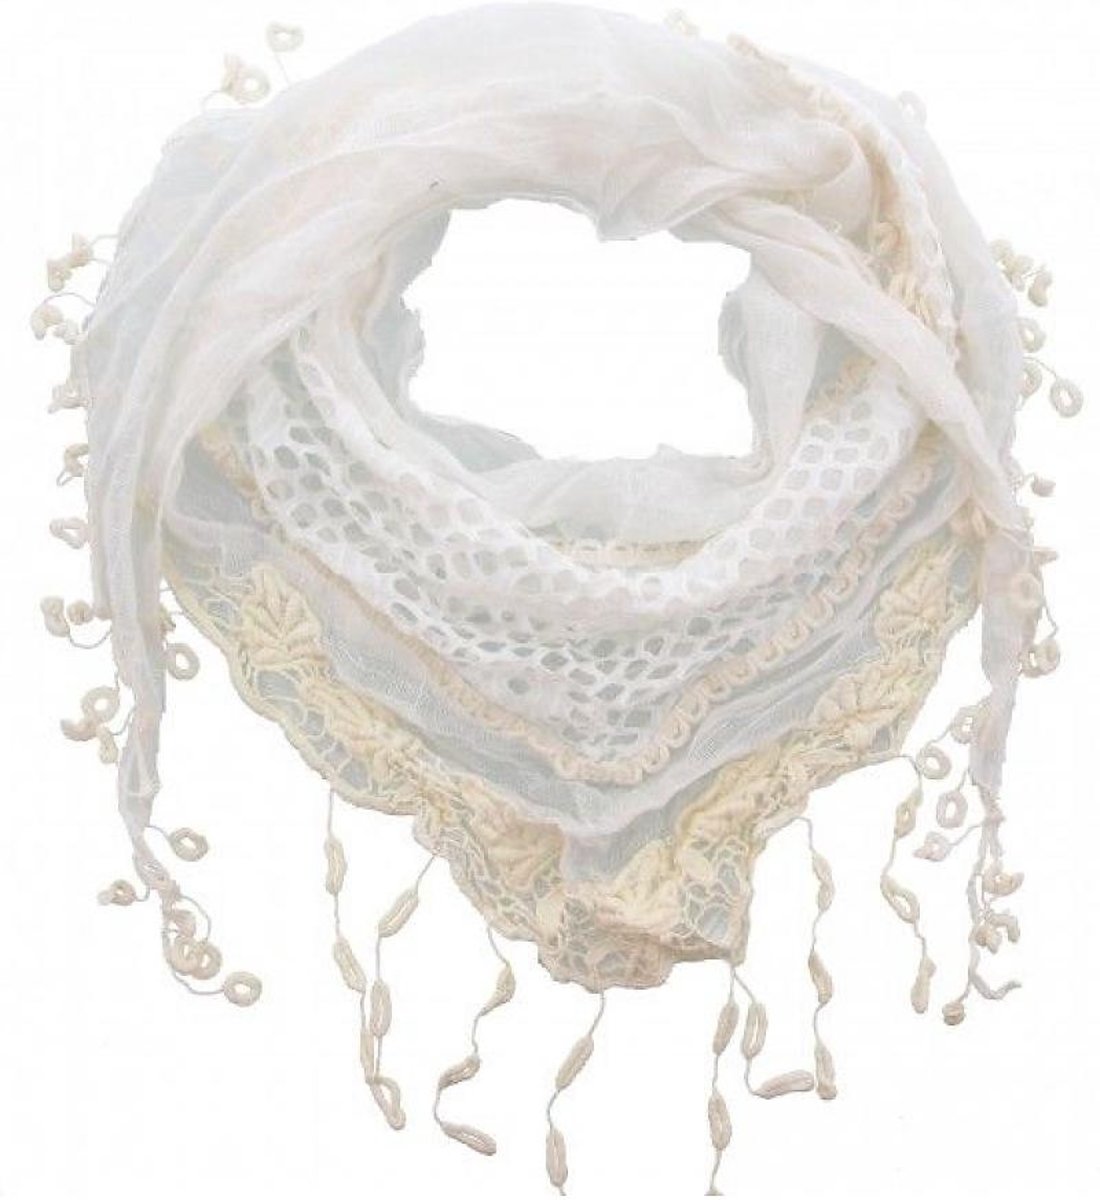 Ongebruikt bol.com | Driehoek sjaal wit met creme SO-48